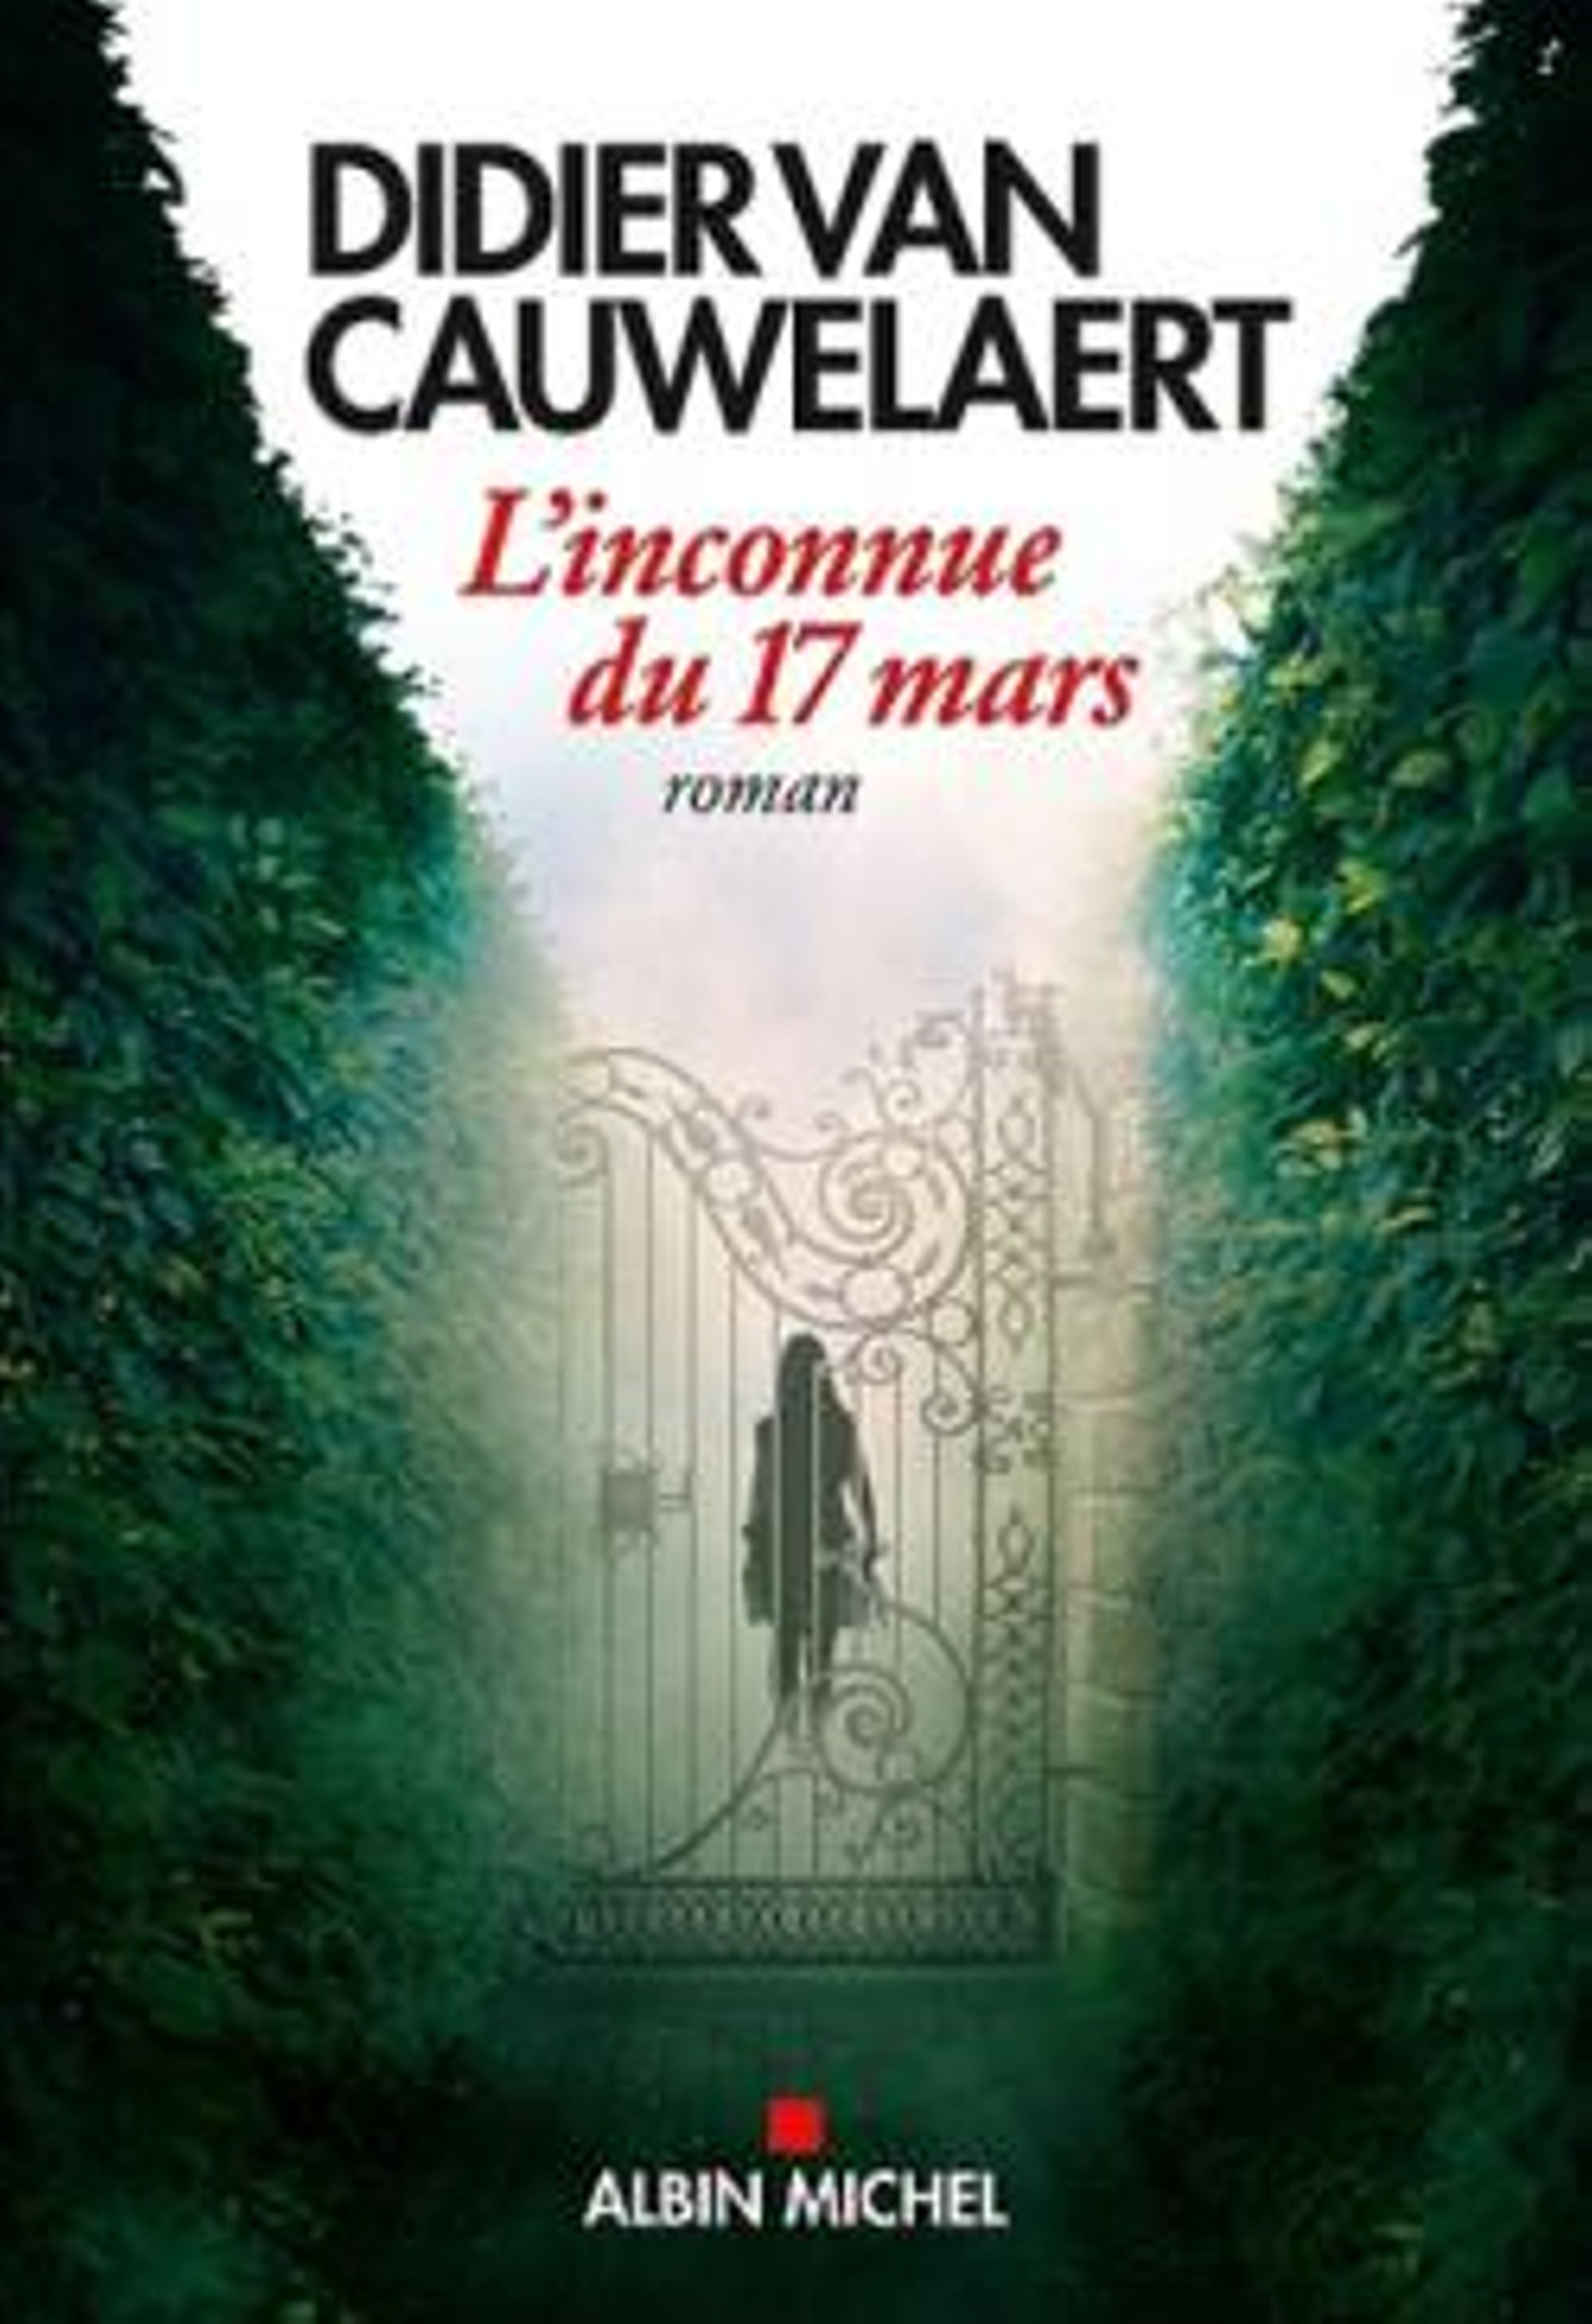 Didier Van Cauwelaert signe "L'inconnue du 17 mars", un nouveau roman sur le confinement